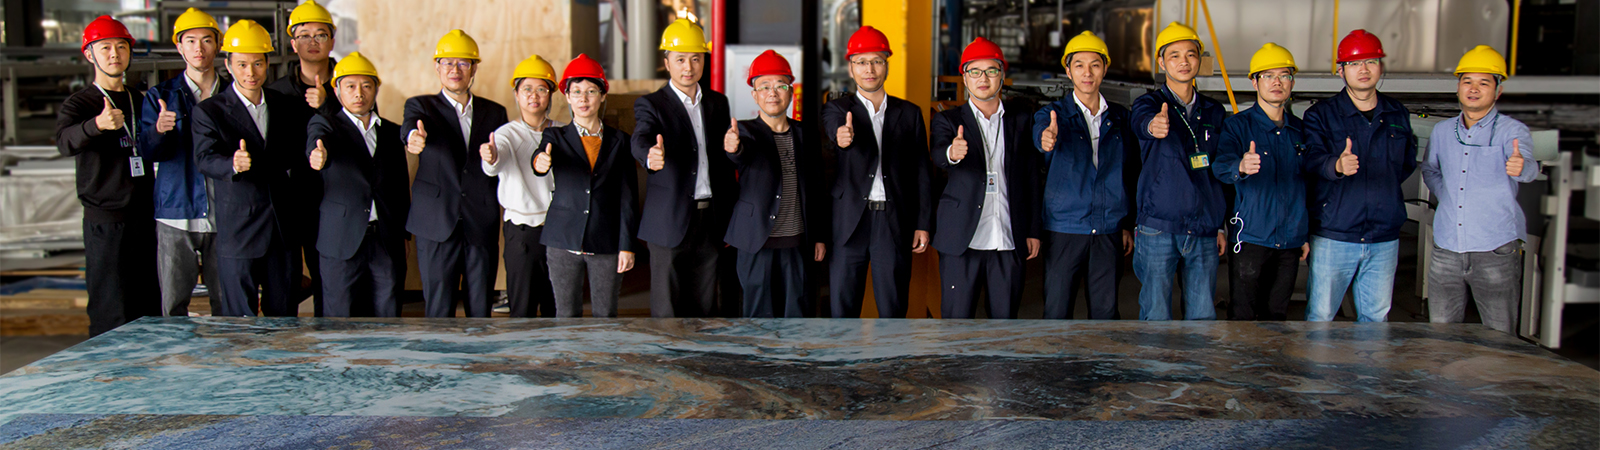 Monalisa partners with SACMI to produce the world’s largest ceramic slab